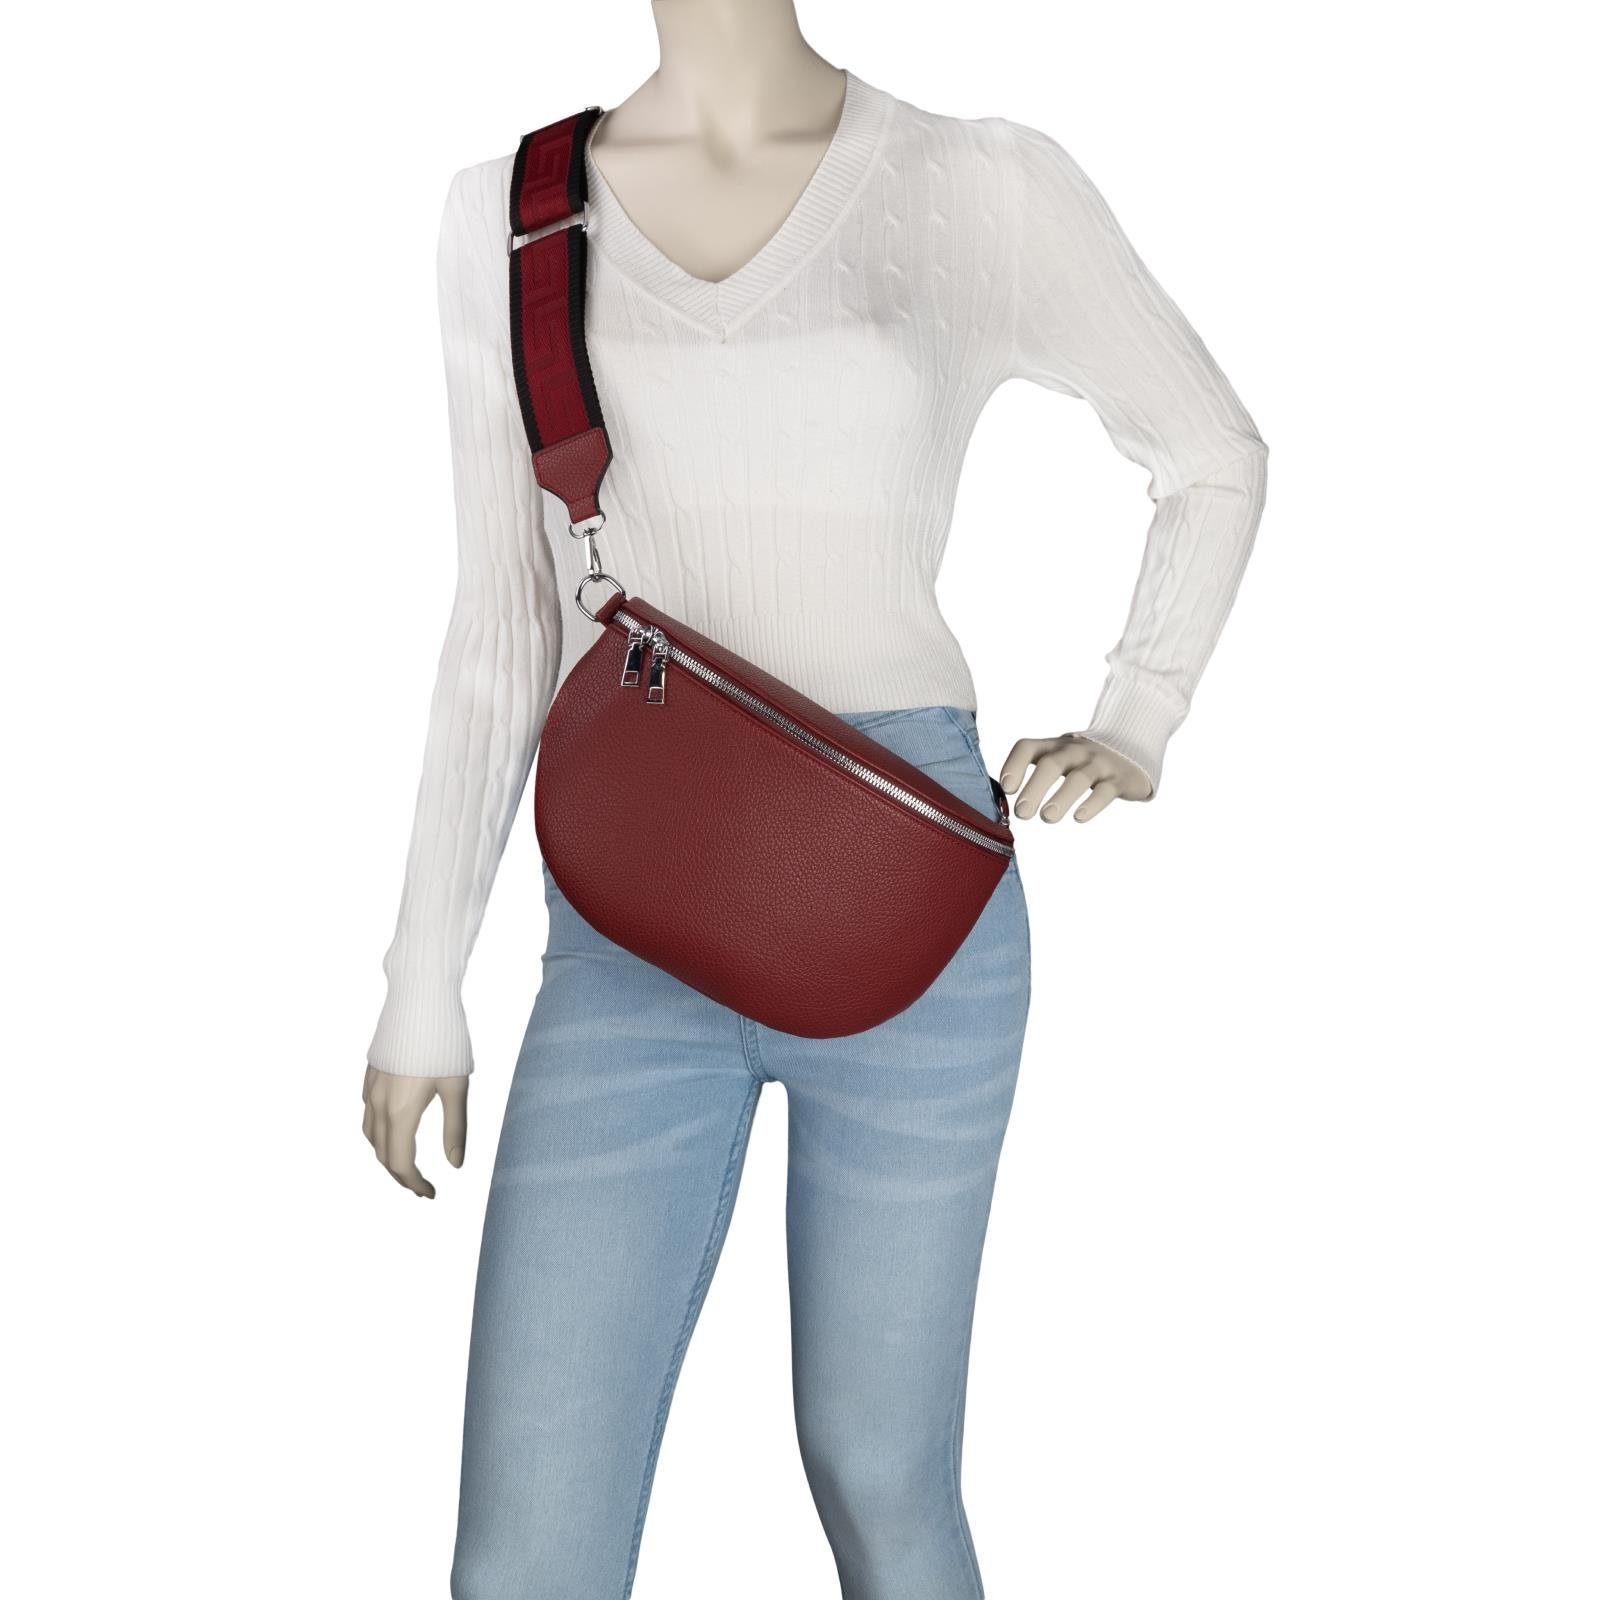 EAAKIE Gürteltasche Bauchtasche CrossOver, Hüfttasche Schultertasche, XL Italy, Umhängetasche als Kunstleder Crossbody-Bag Umhängetasche PURPLE-RED tragbar